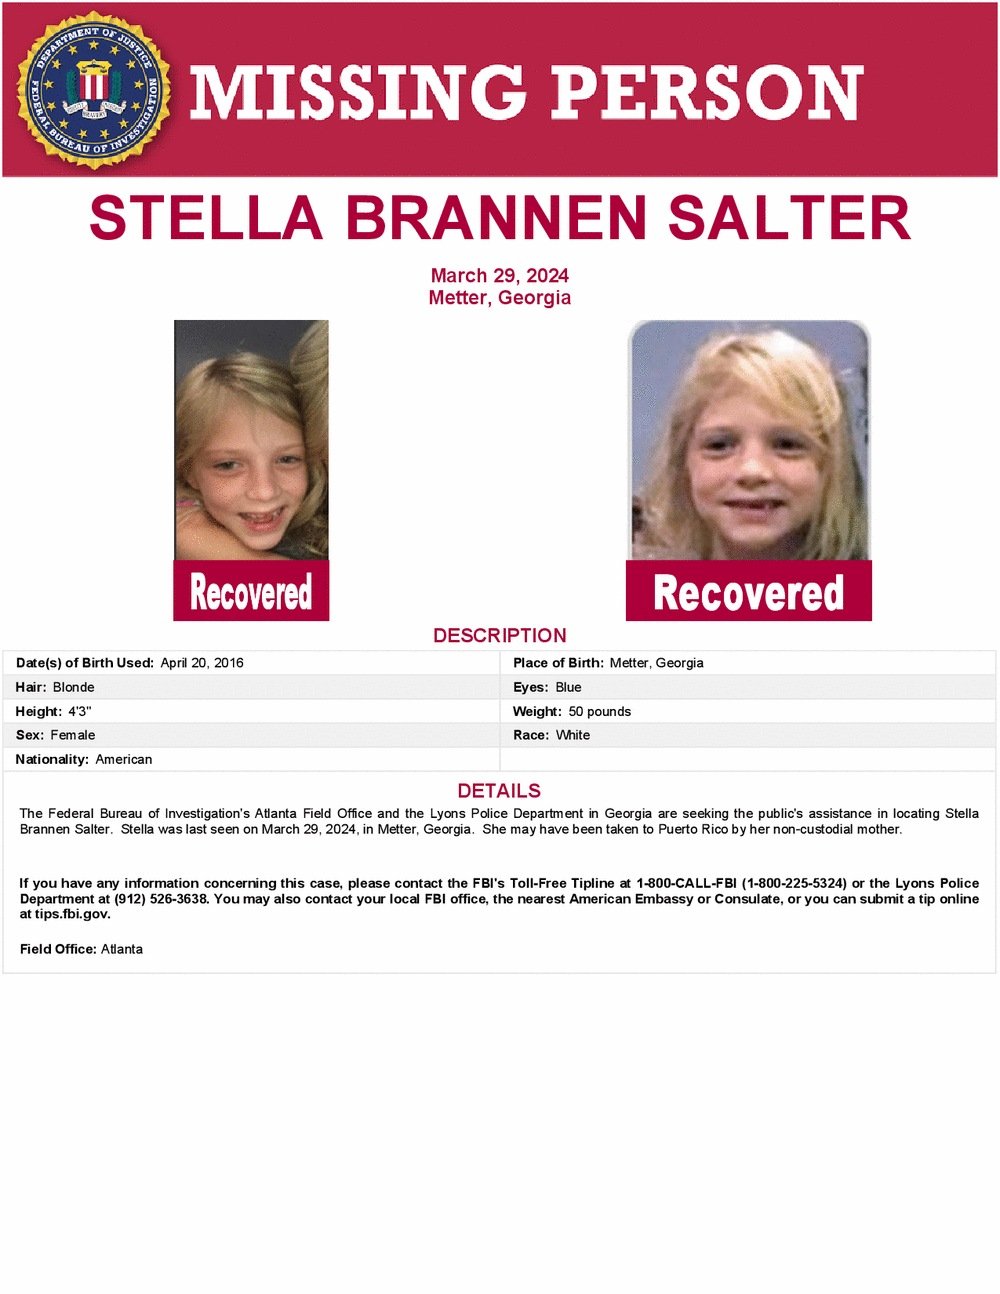 Stella Brannen Salter, missing child found, Atlanta